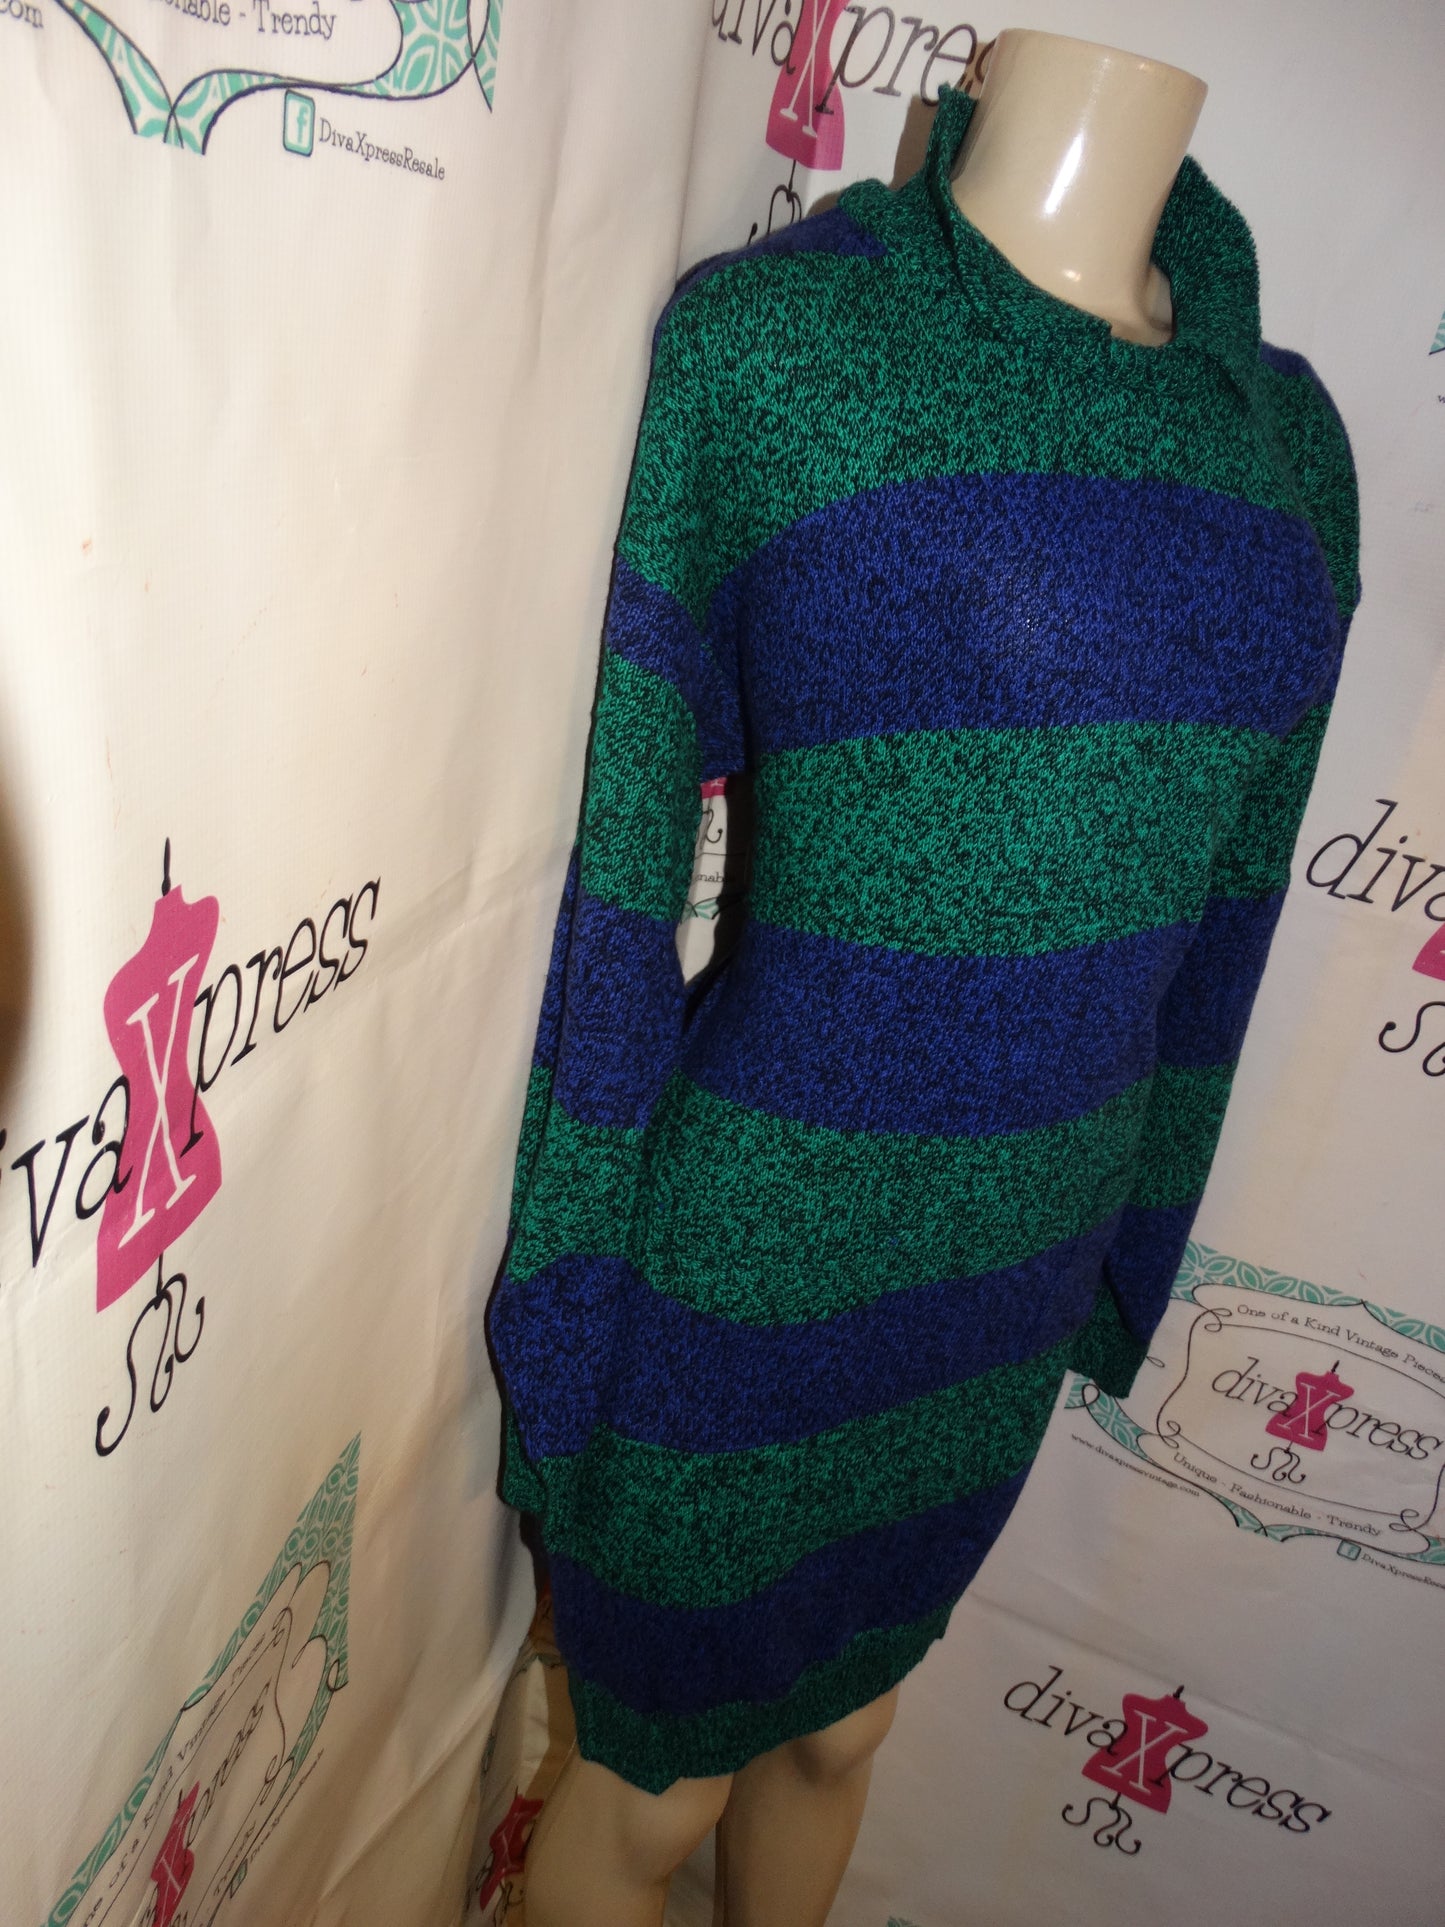 Vintage Wye Oaks Purple/Green Dress Size XL